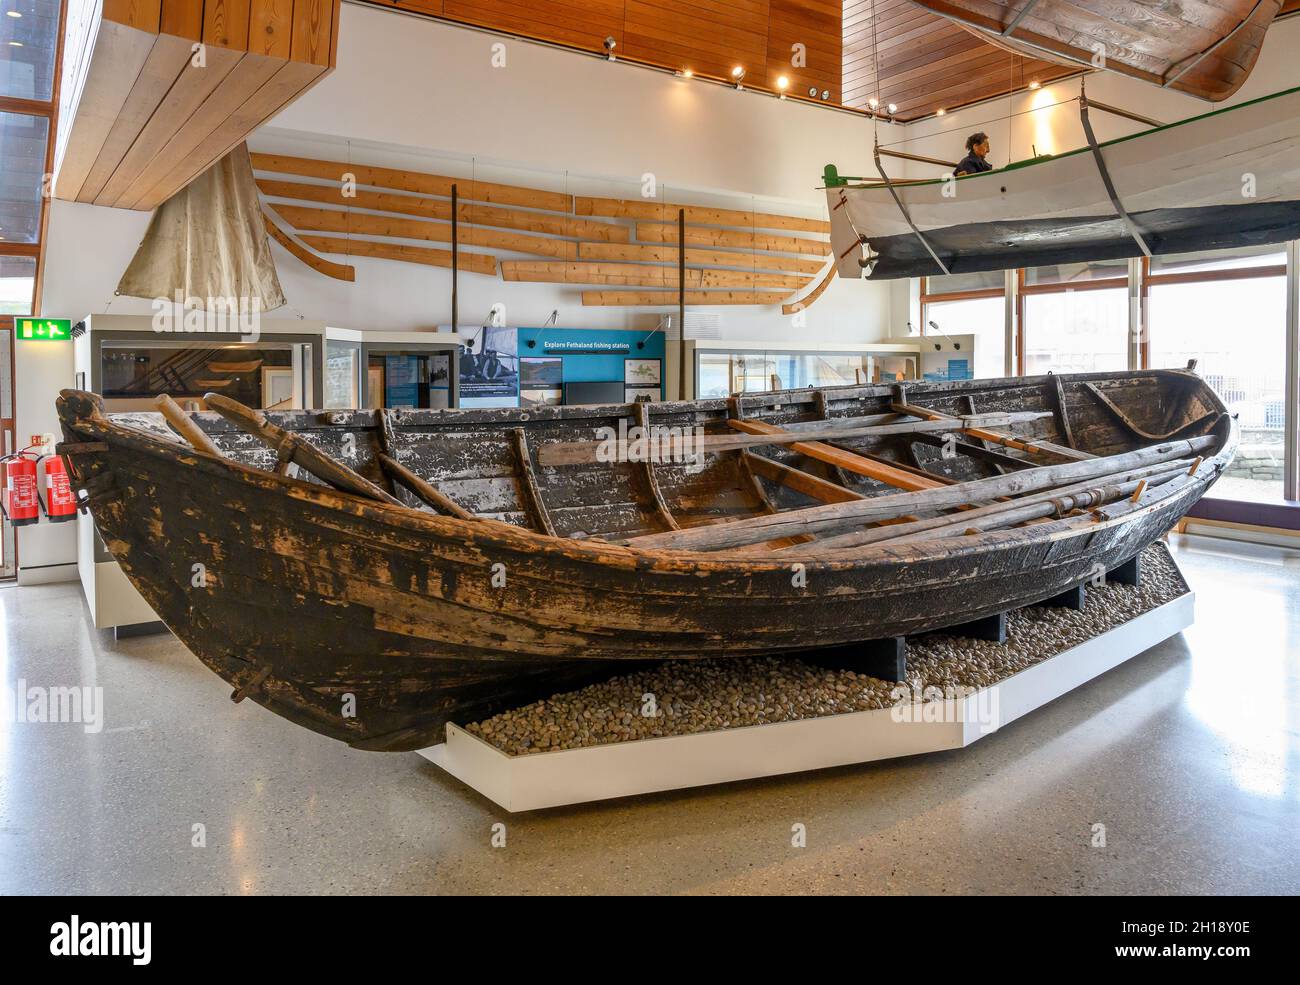 Un 'Sixareen', un bote de remo de seis oares usado para la pesca de altura, el Museo Shetland, Lerwick, Mainland, Shetland, Escocia, Reino Unido Foto de stock